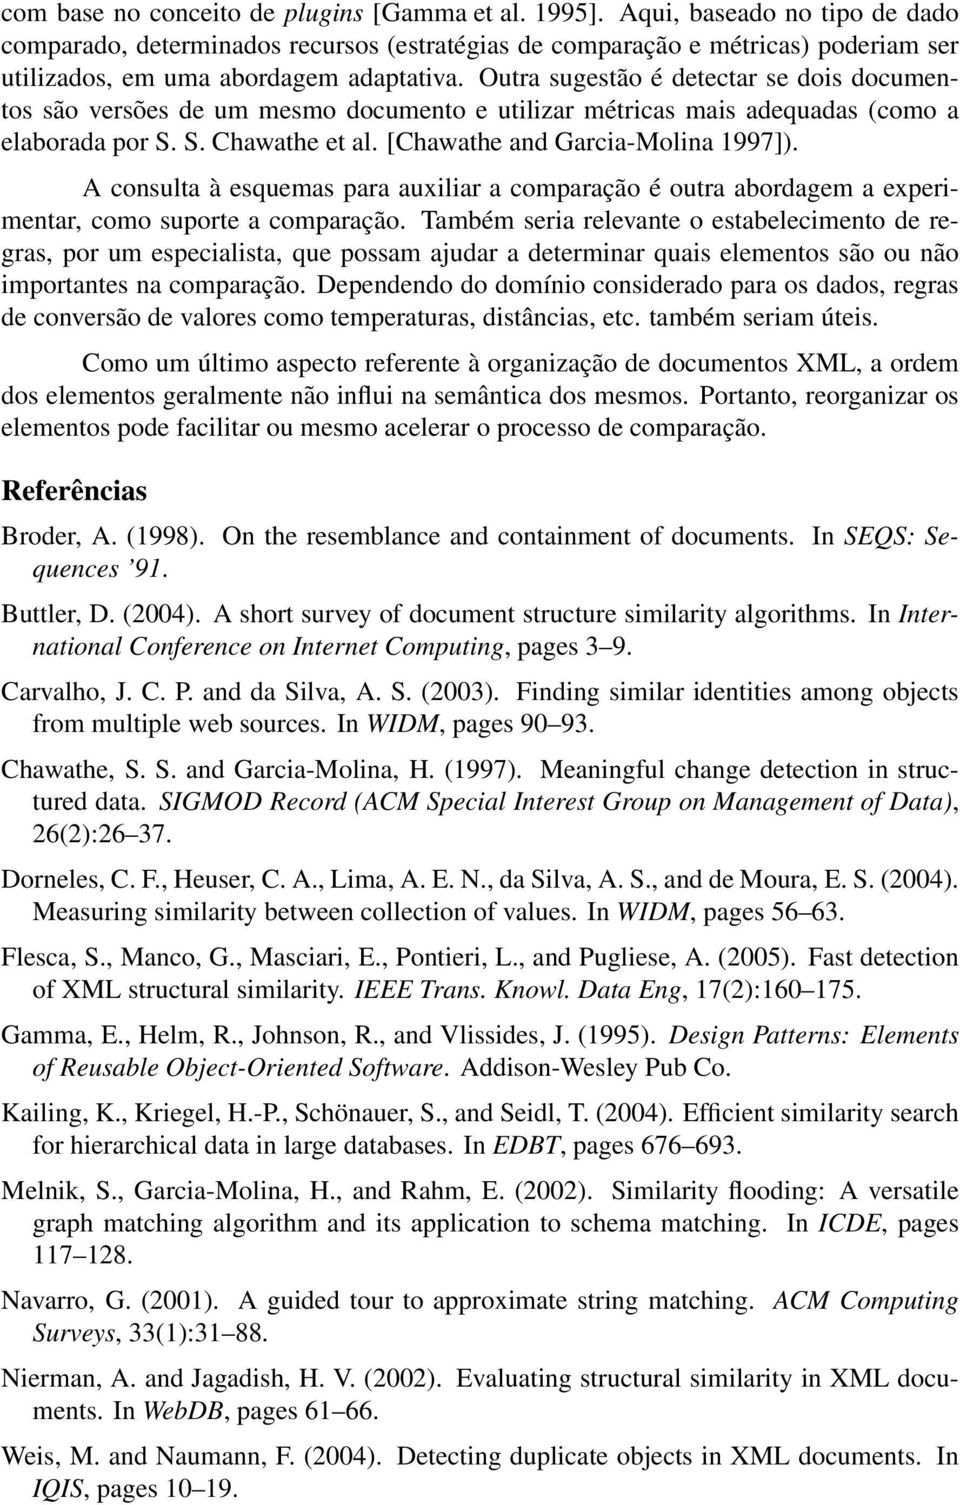 Outra sugestão é detectar se dois documentos são versões de um mesmo documento e utilizar métricas mais adequadas (como a elaborada por S. S. Chawathe et al. [Chawathe and Garcia-Molina 1997]).